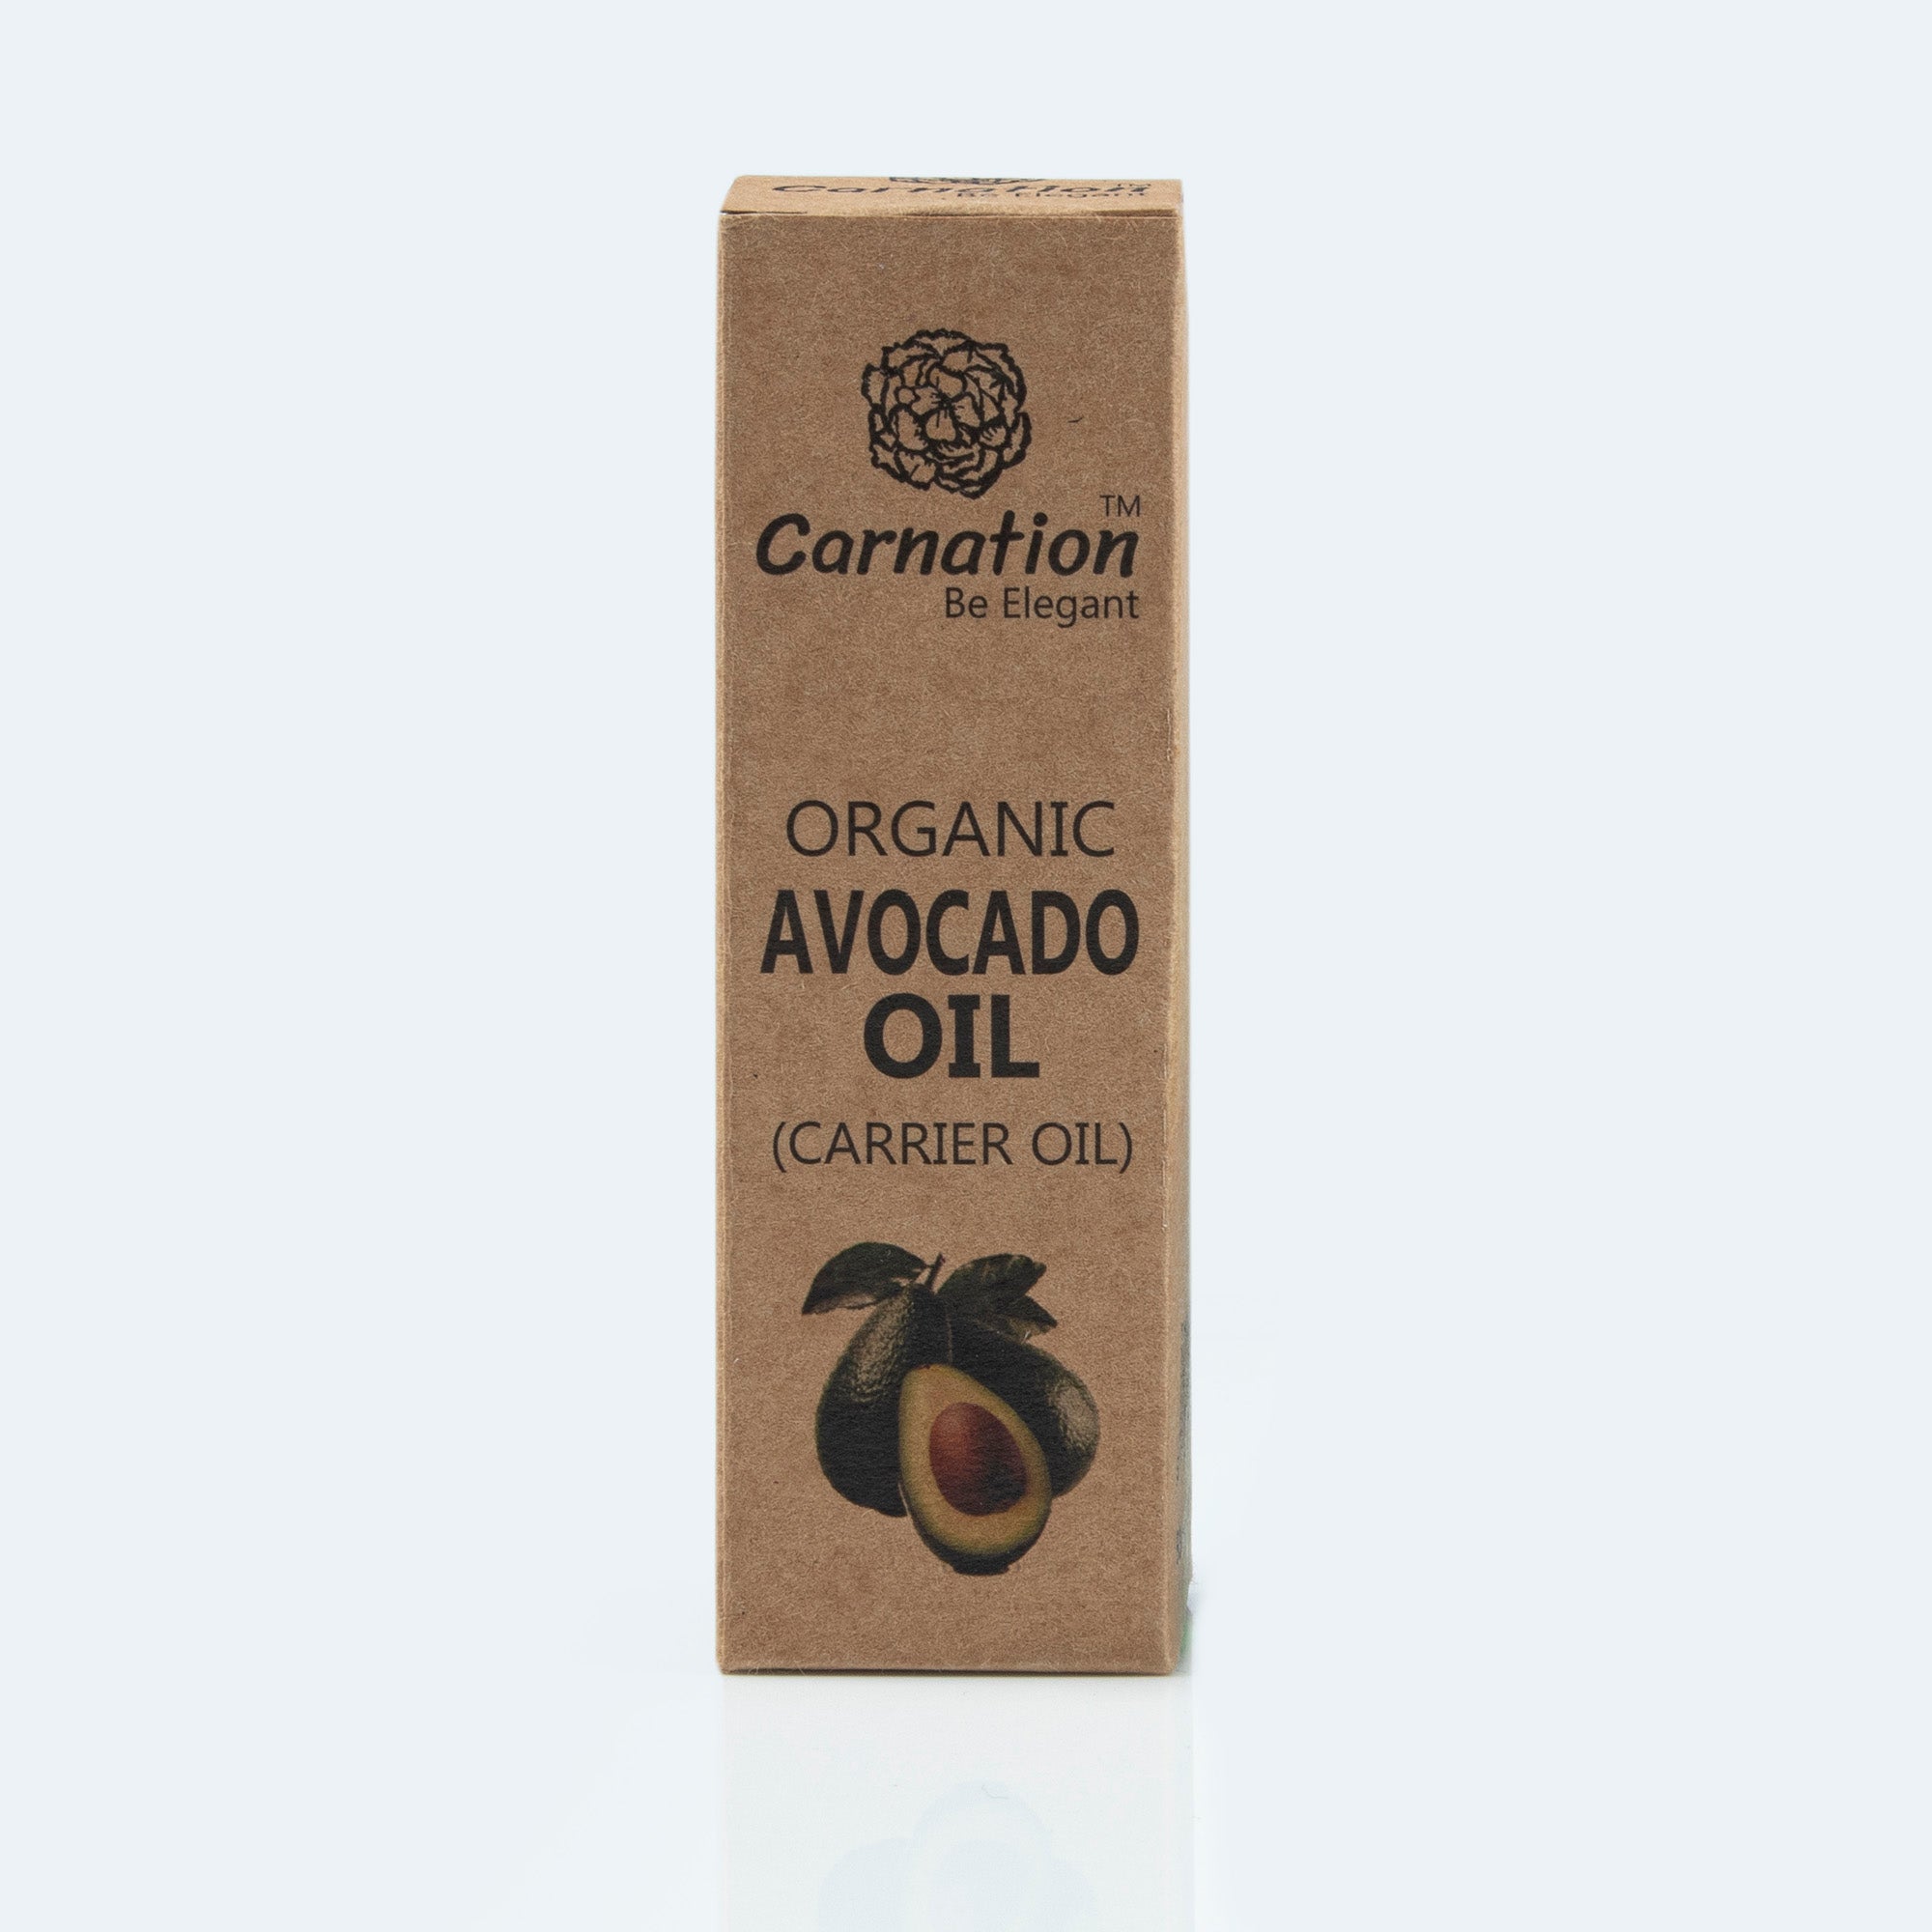 Ovocado-oil-for-health